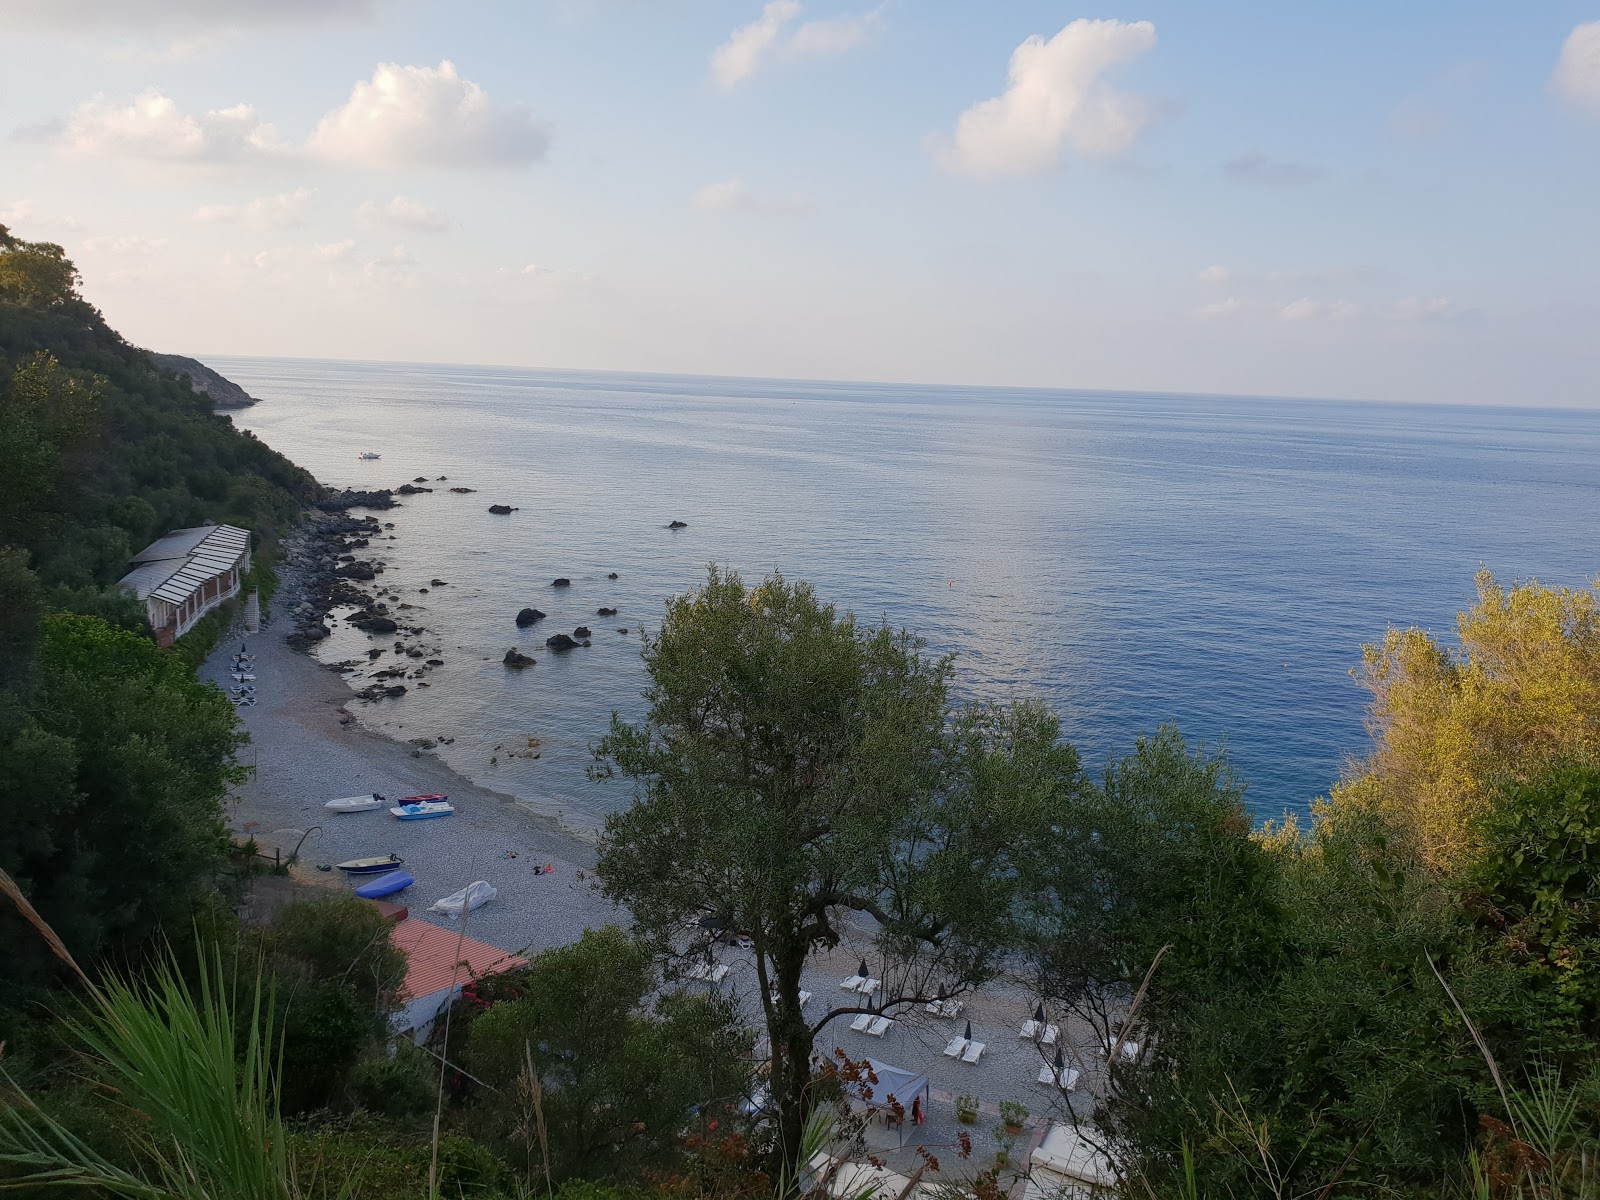 Foto av Spiaggia Brignulari med turkos rent vatten yta